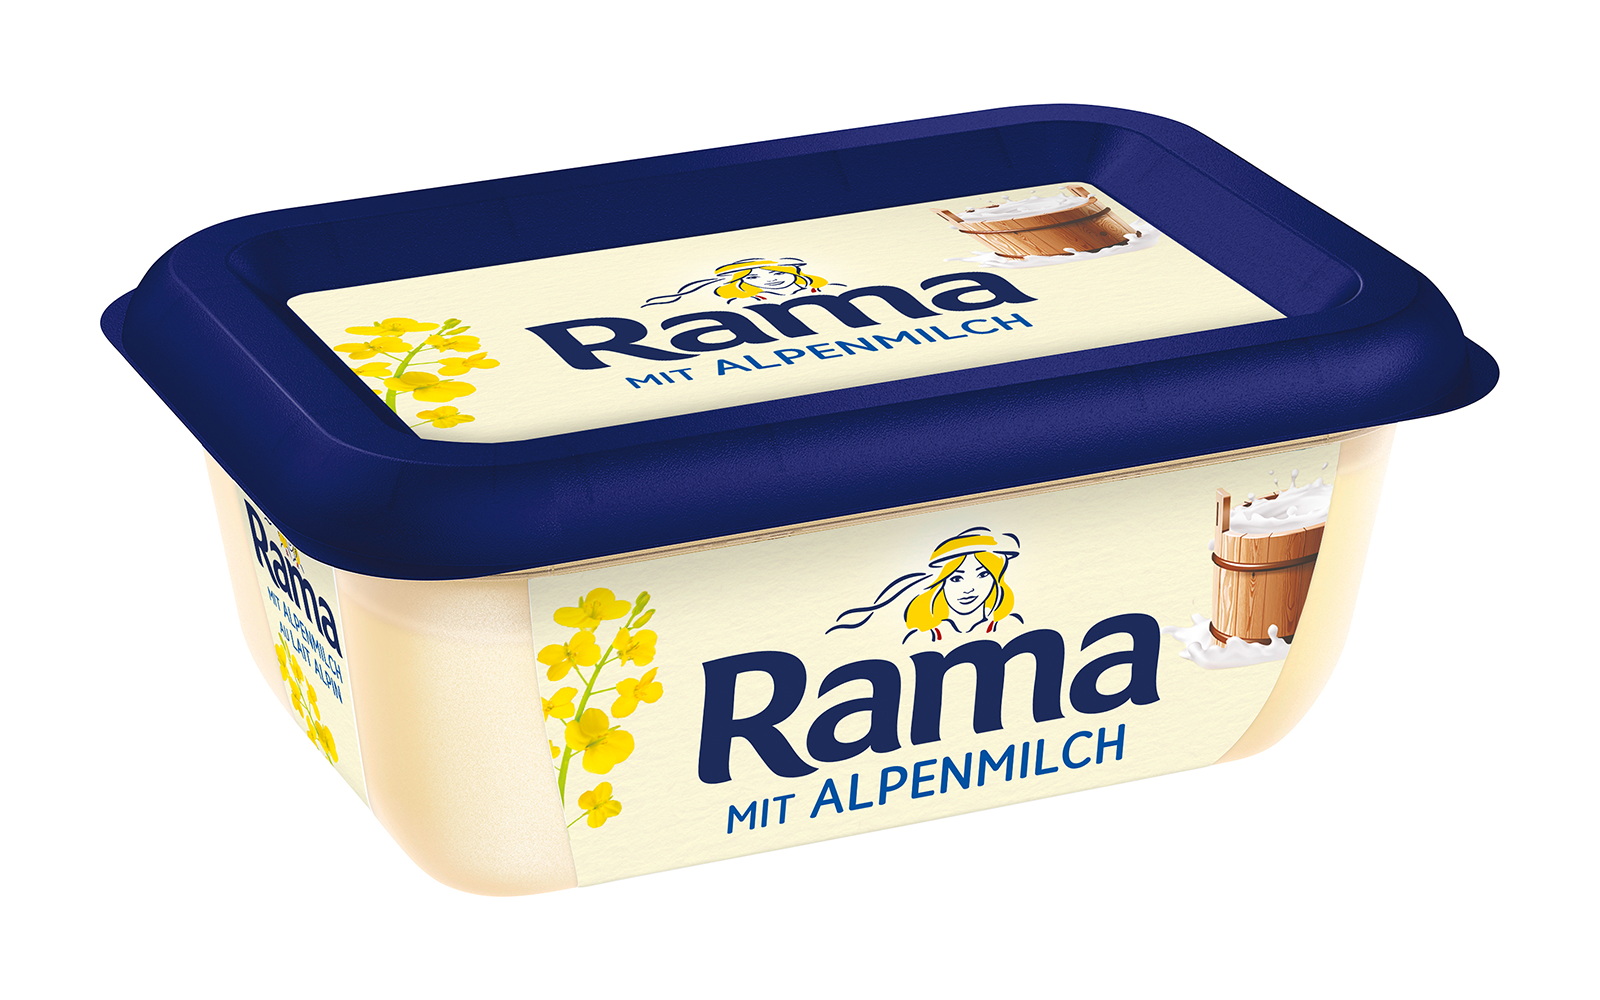 Rama mit Alpenmilch 225g Becher, Quelle: Unilever